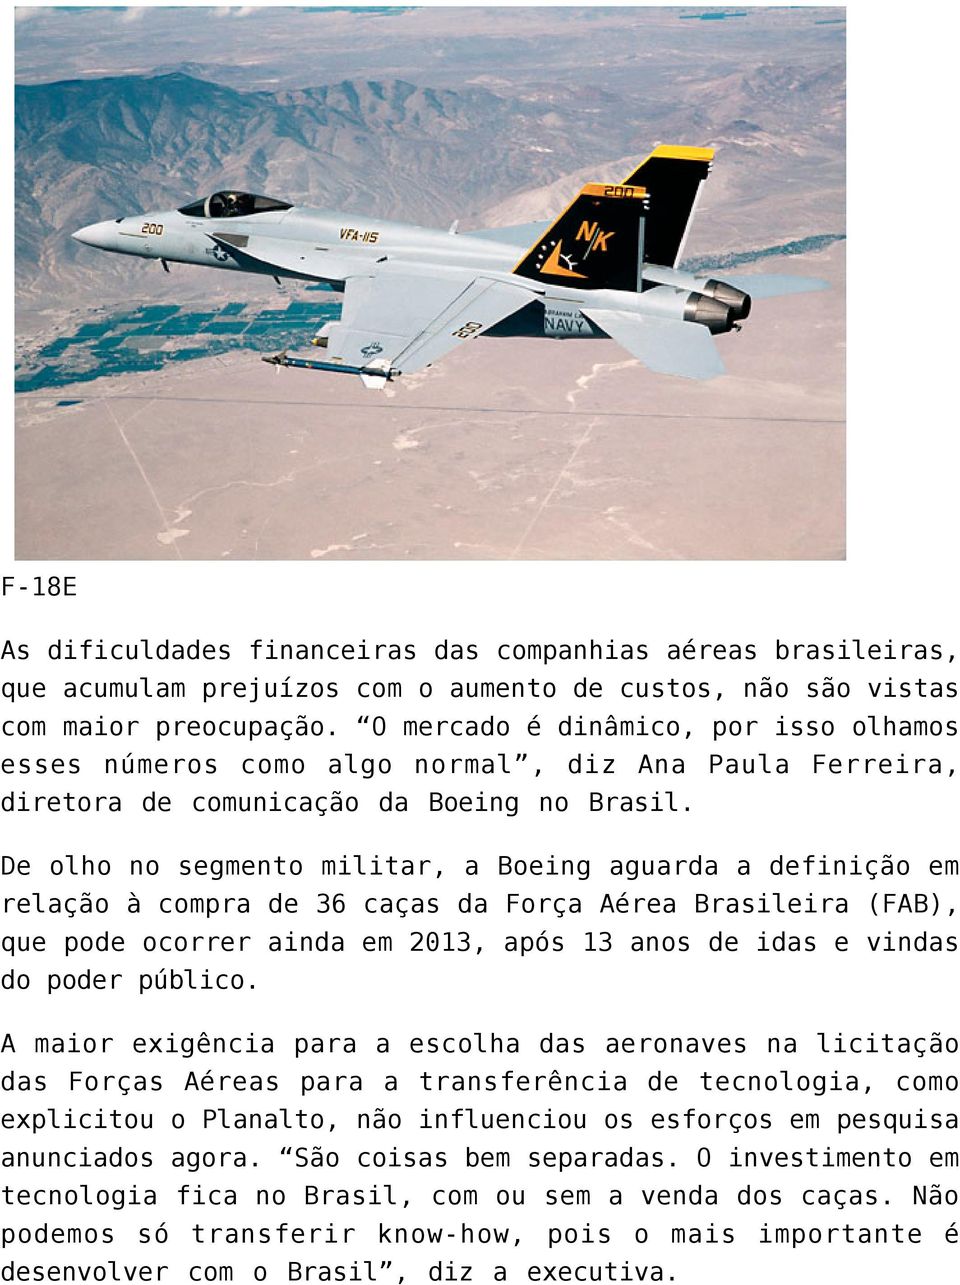 De olho no segmento militar, a Boeing aguarda a definição em relação à compra de 36 caças da Força Aérea Brasileira (FAB), que pode ocorrer ainda em 2013, após 13 anos de idas e vindas do poder